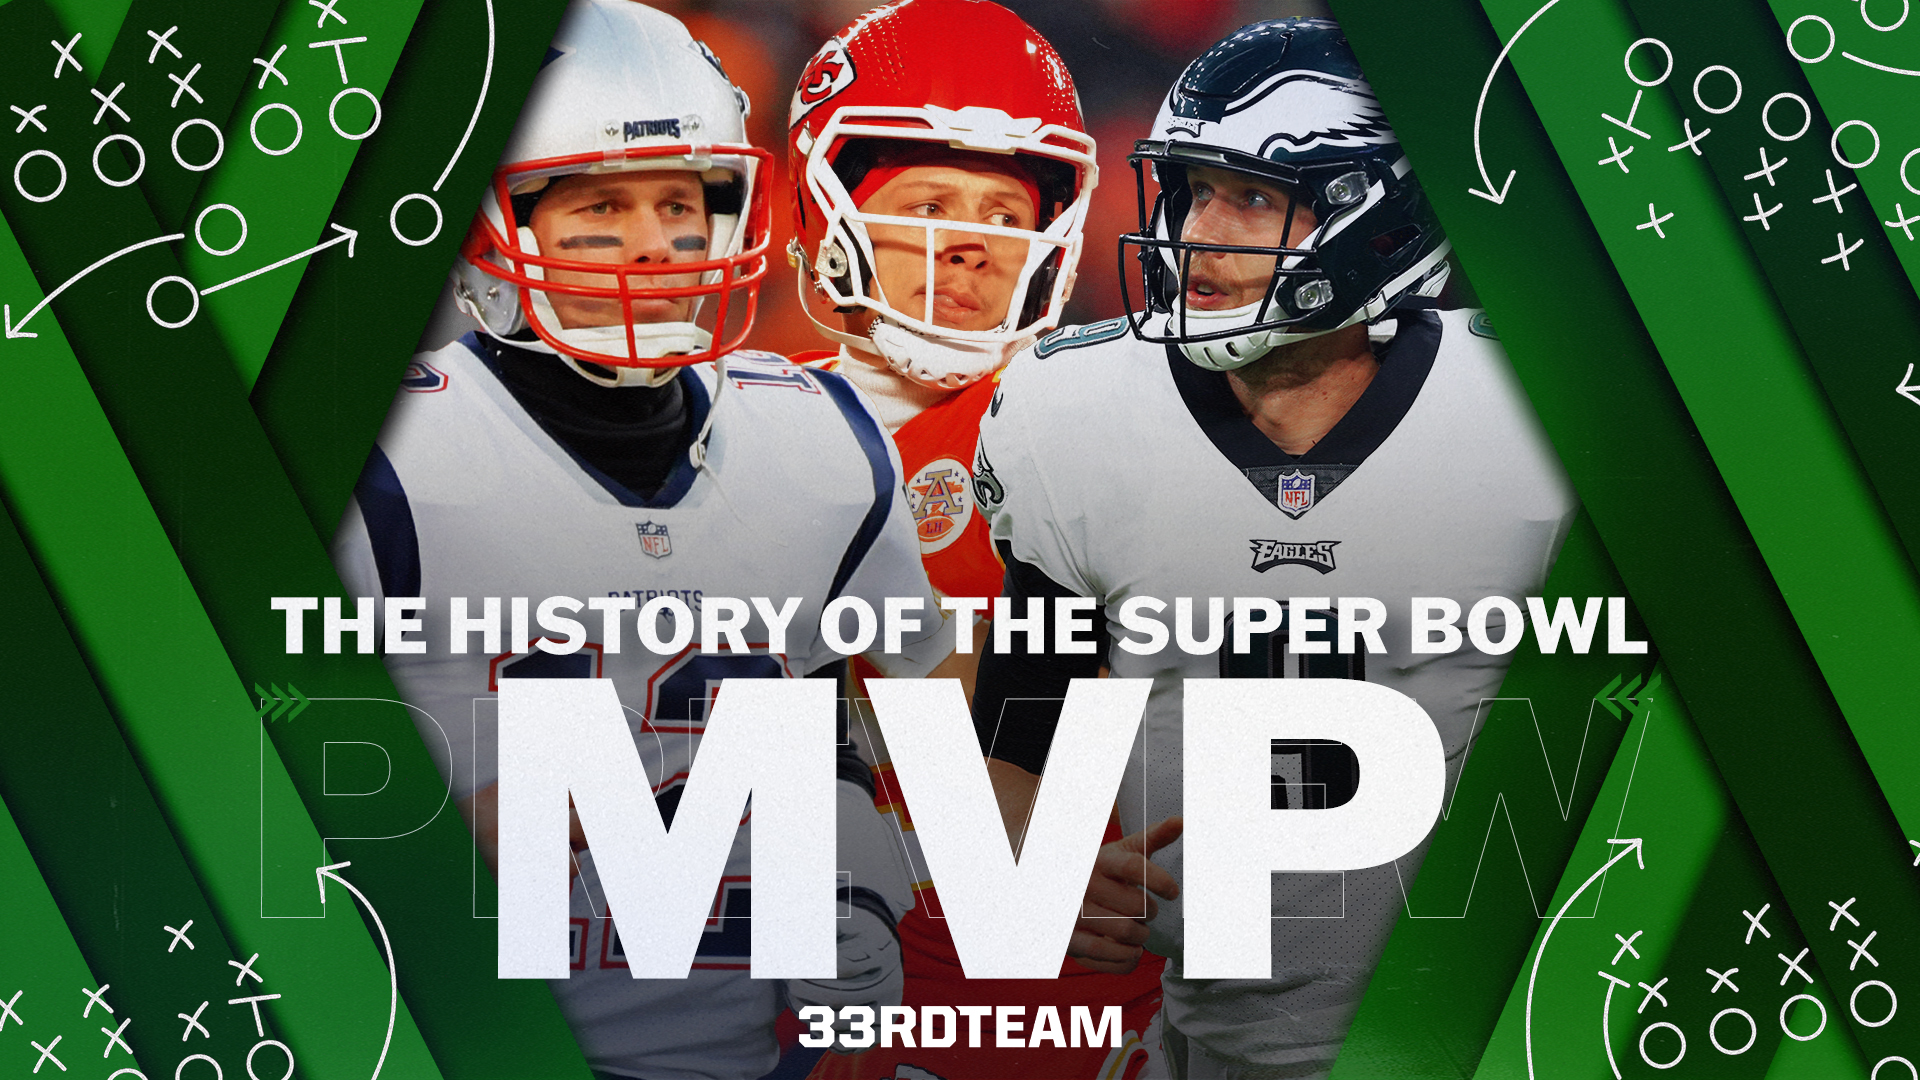 Super Bowl Live: Kupp named Super Bowl MVP after winning TD